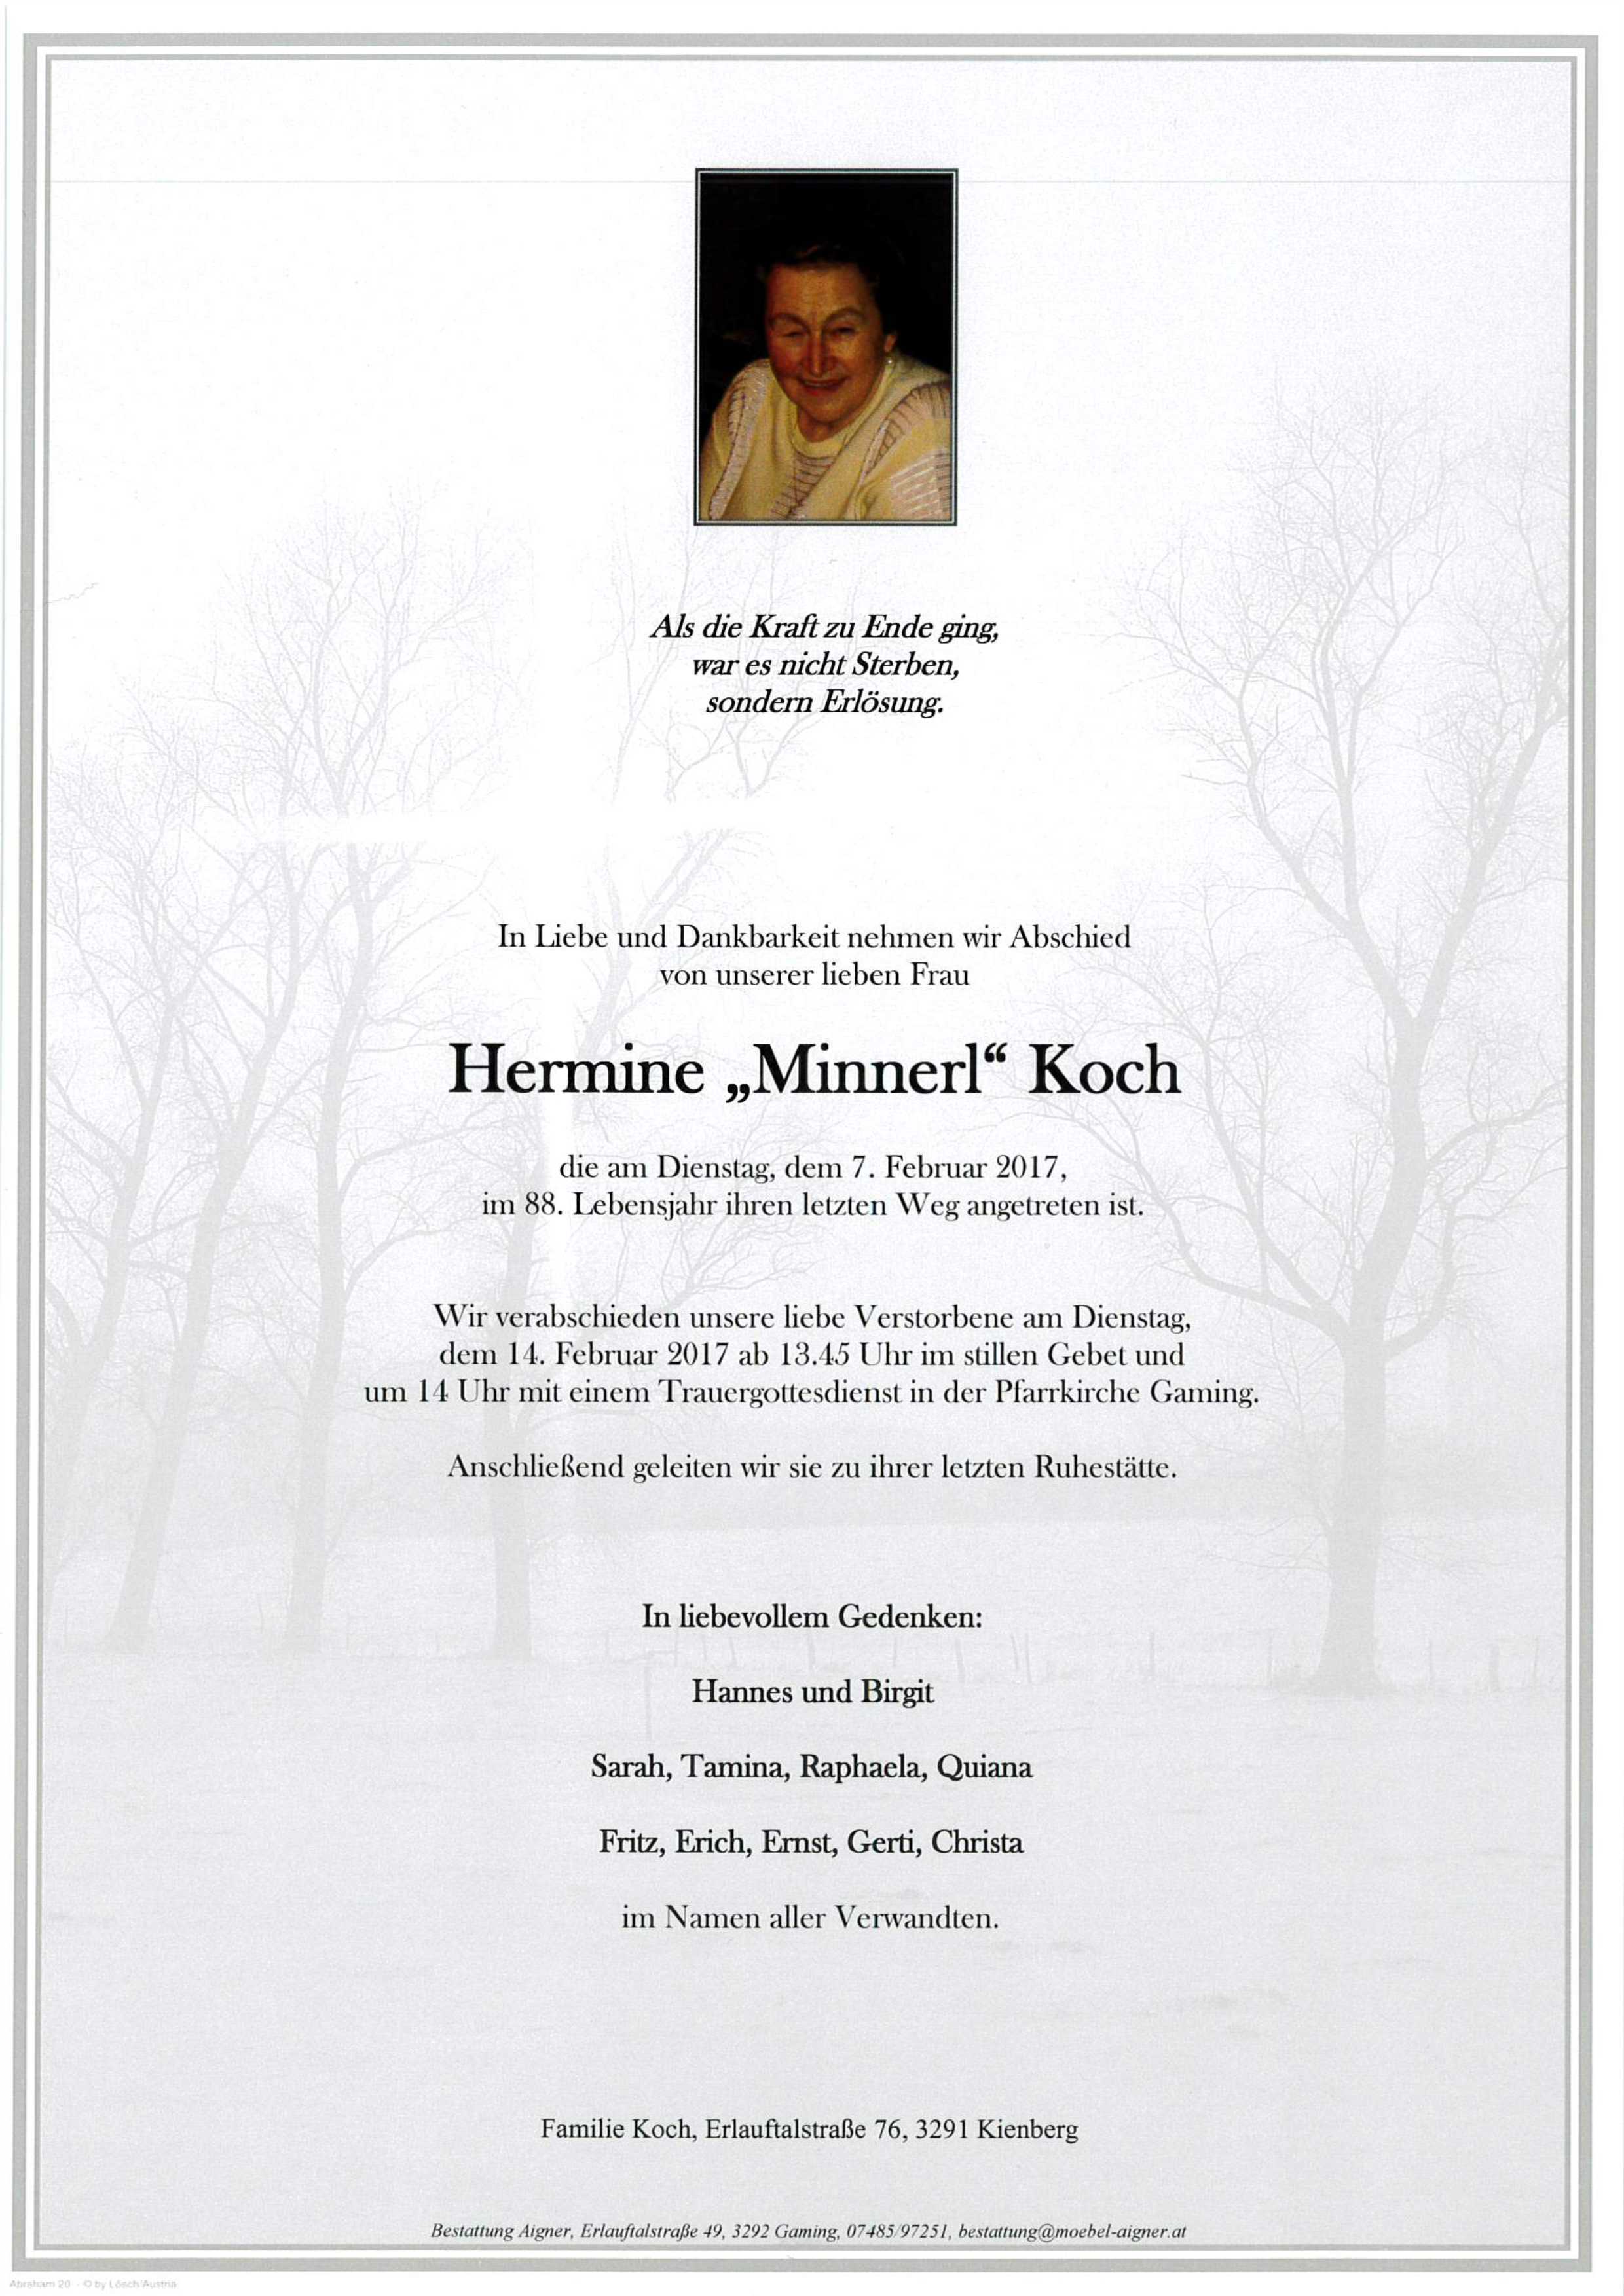 Hermine Koch